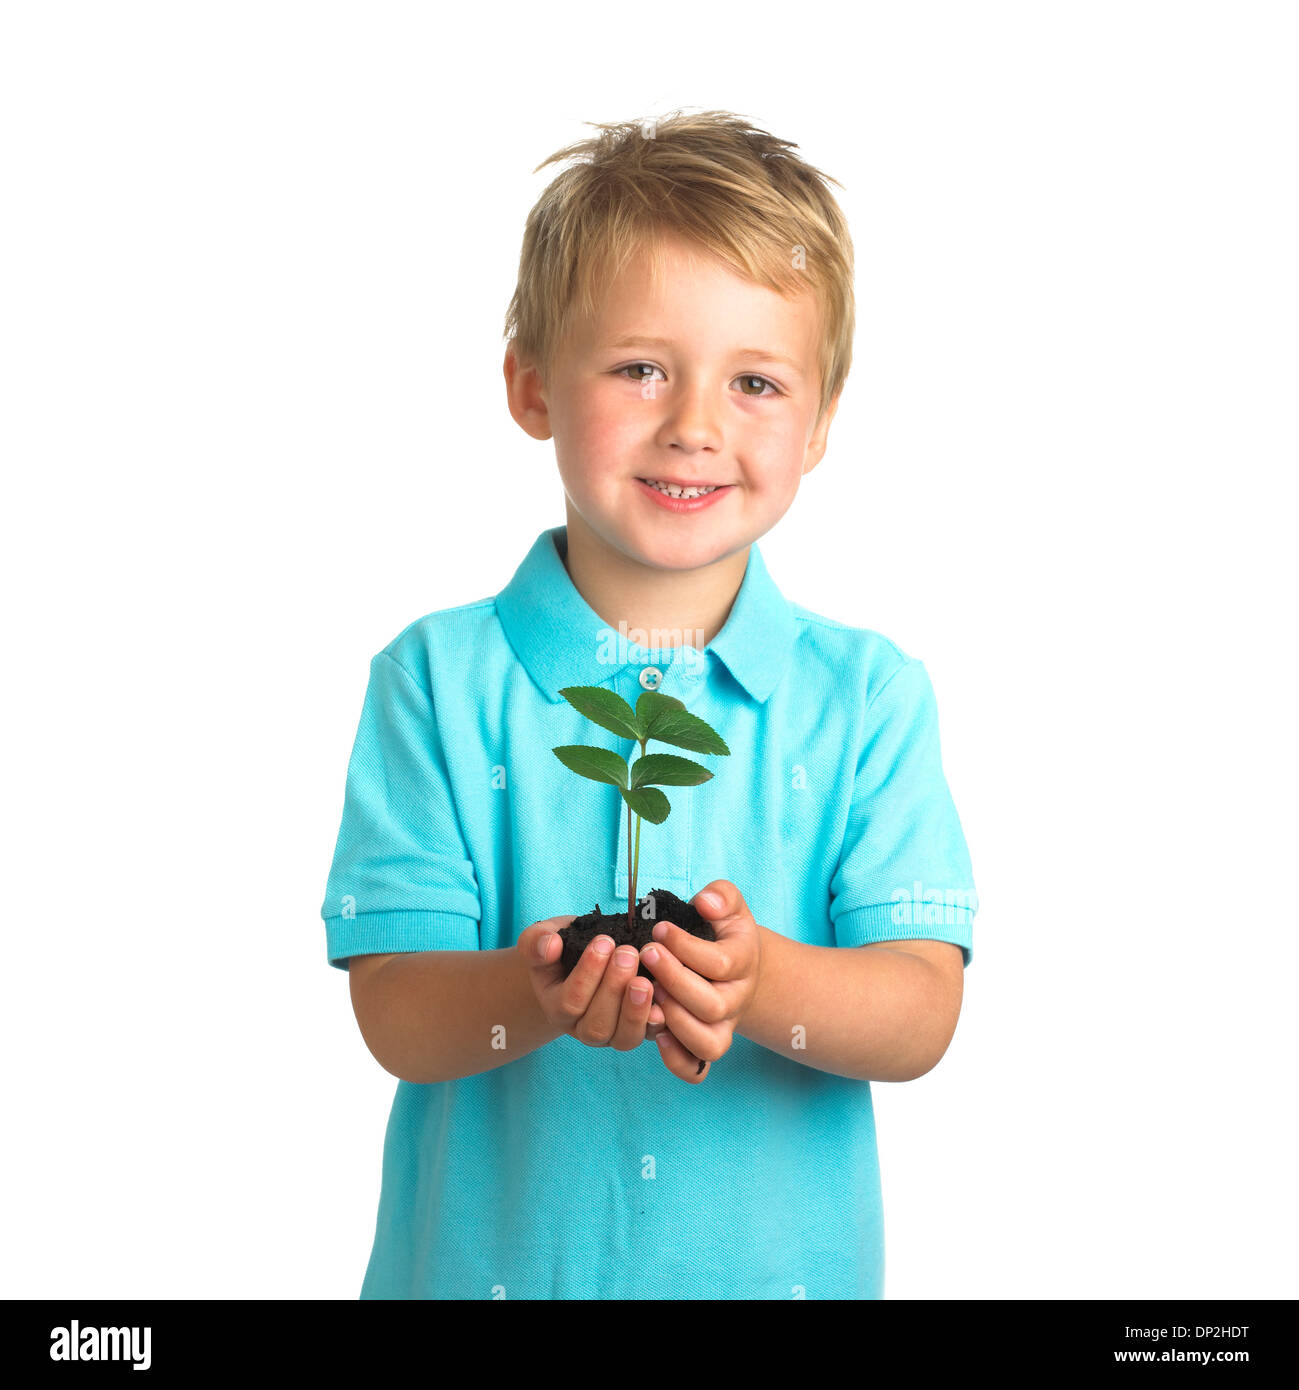 Boy holding seedling Stock Photo